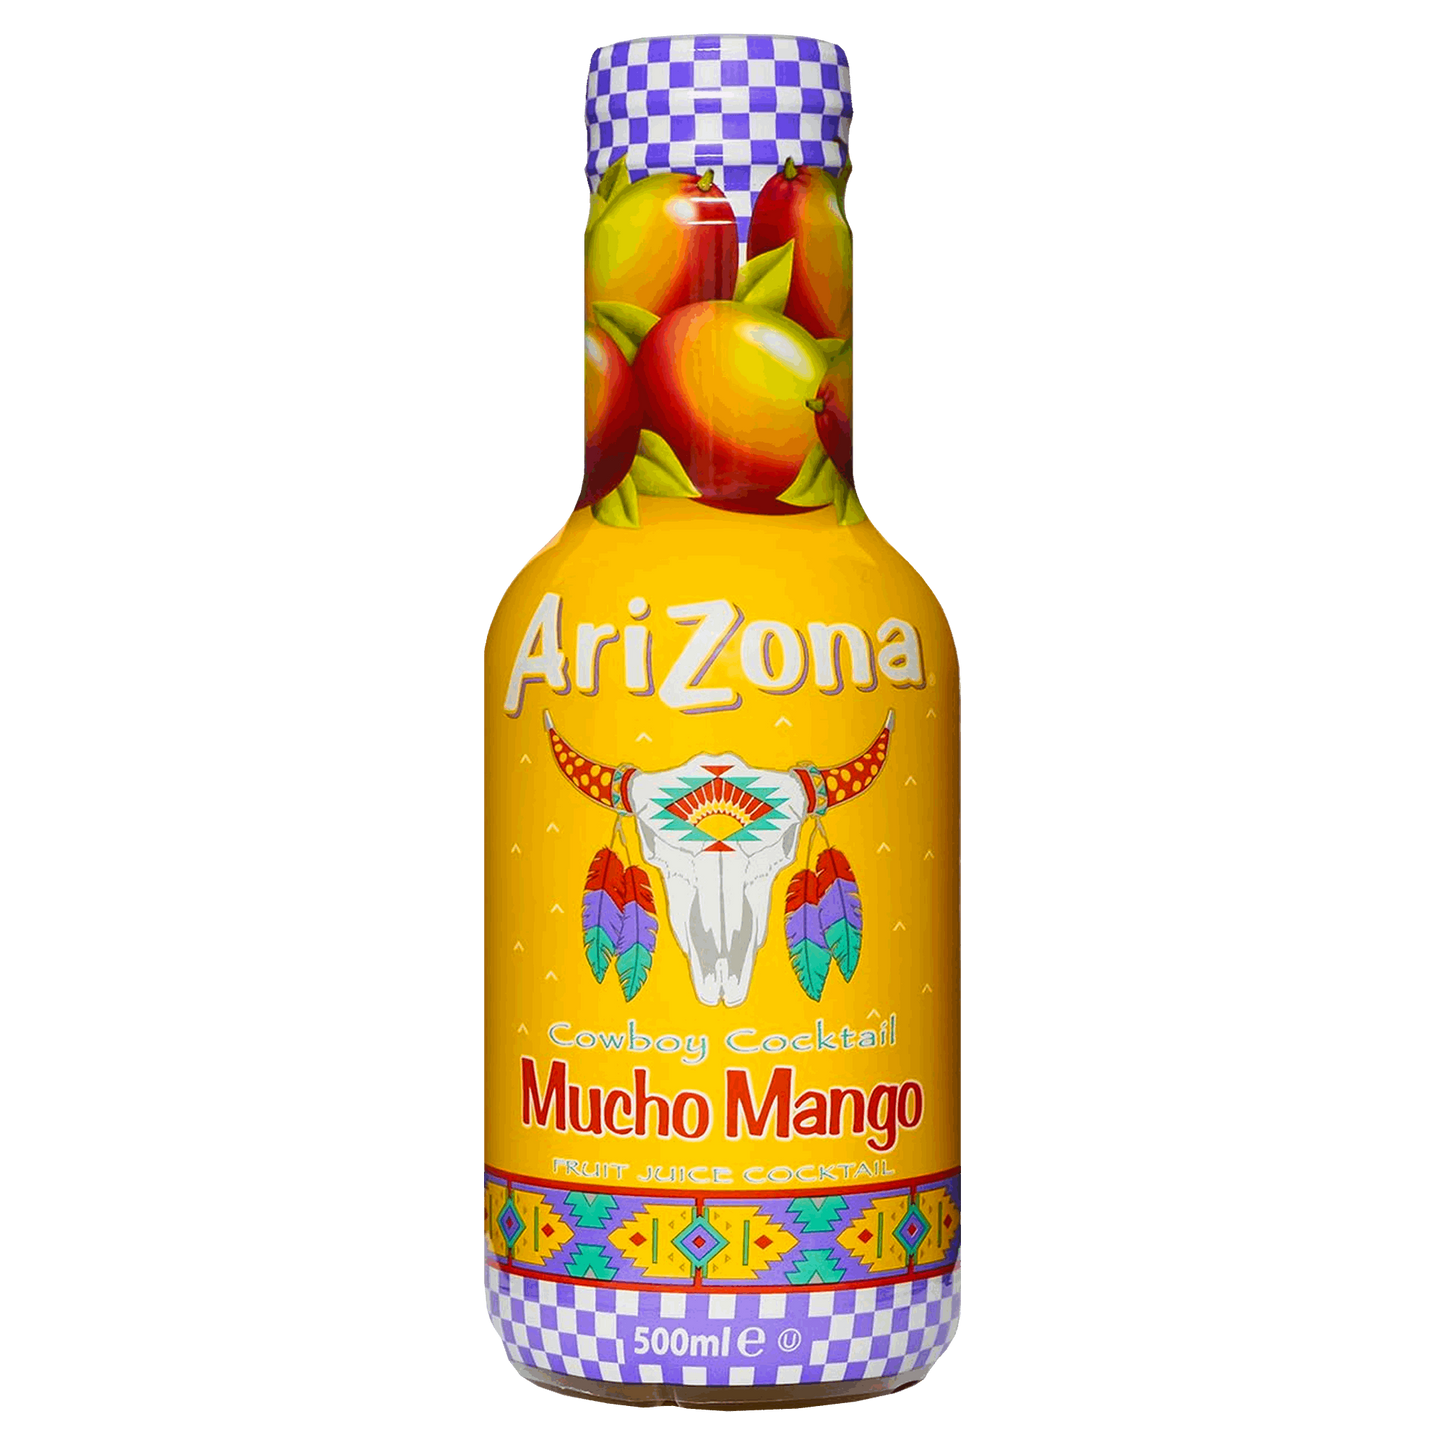 Arizona bottiglietta-  Mucho Mango